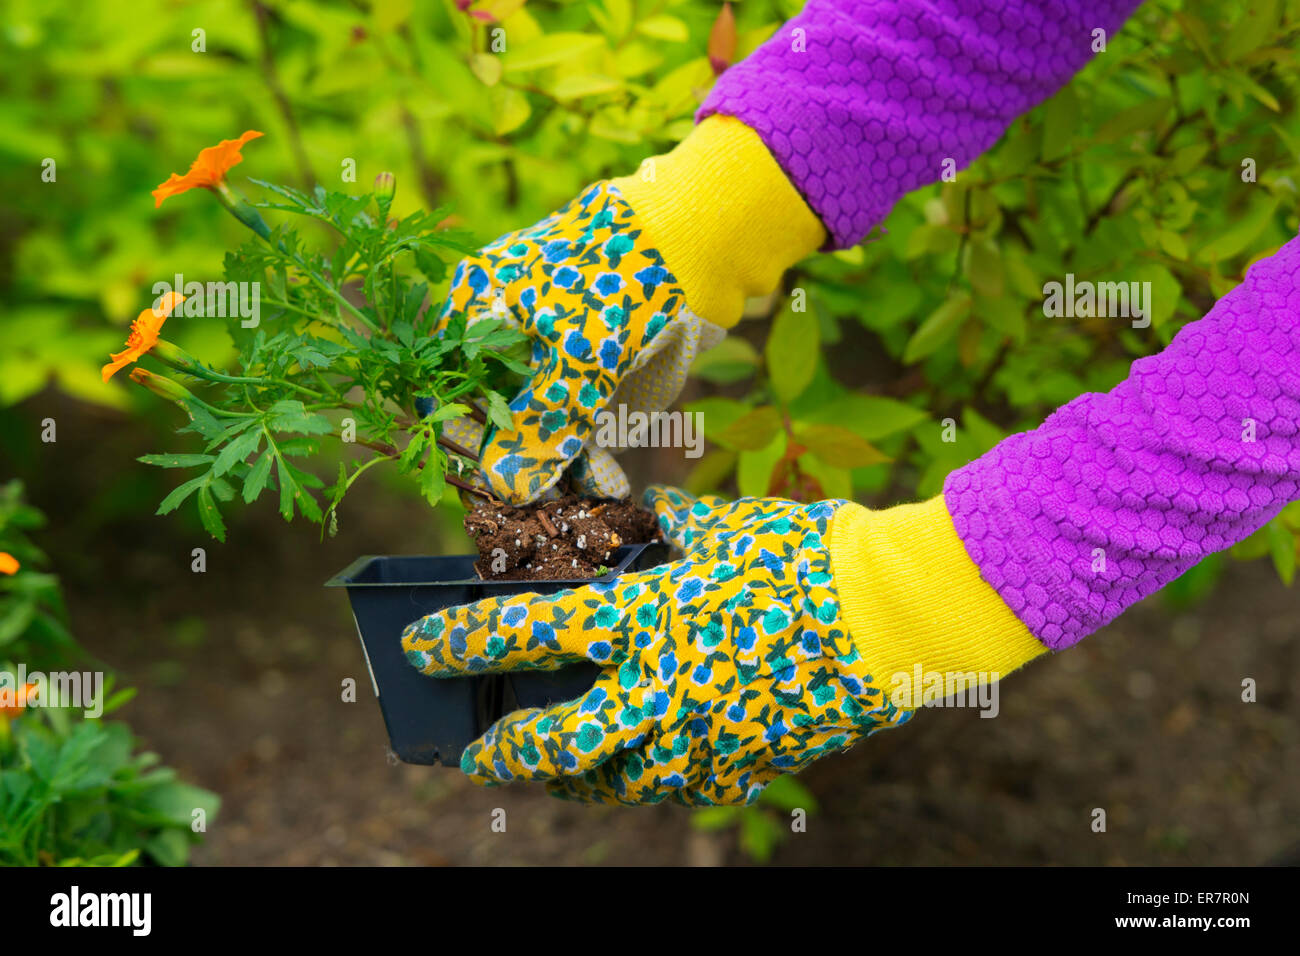 Le jardinage, les semis, fleurs, plantes Woman holding flower planter dans jardin, woman's hands dans des gants de jardinage Banque D'Images